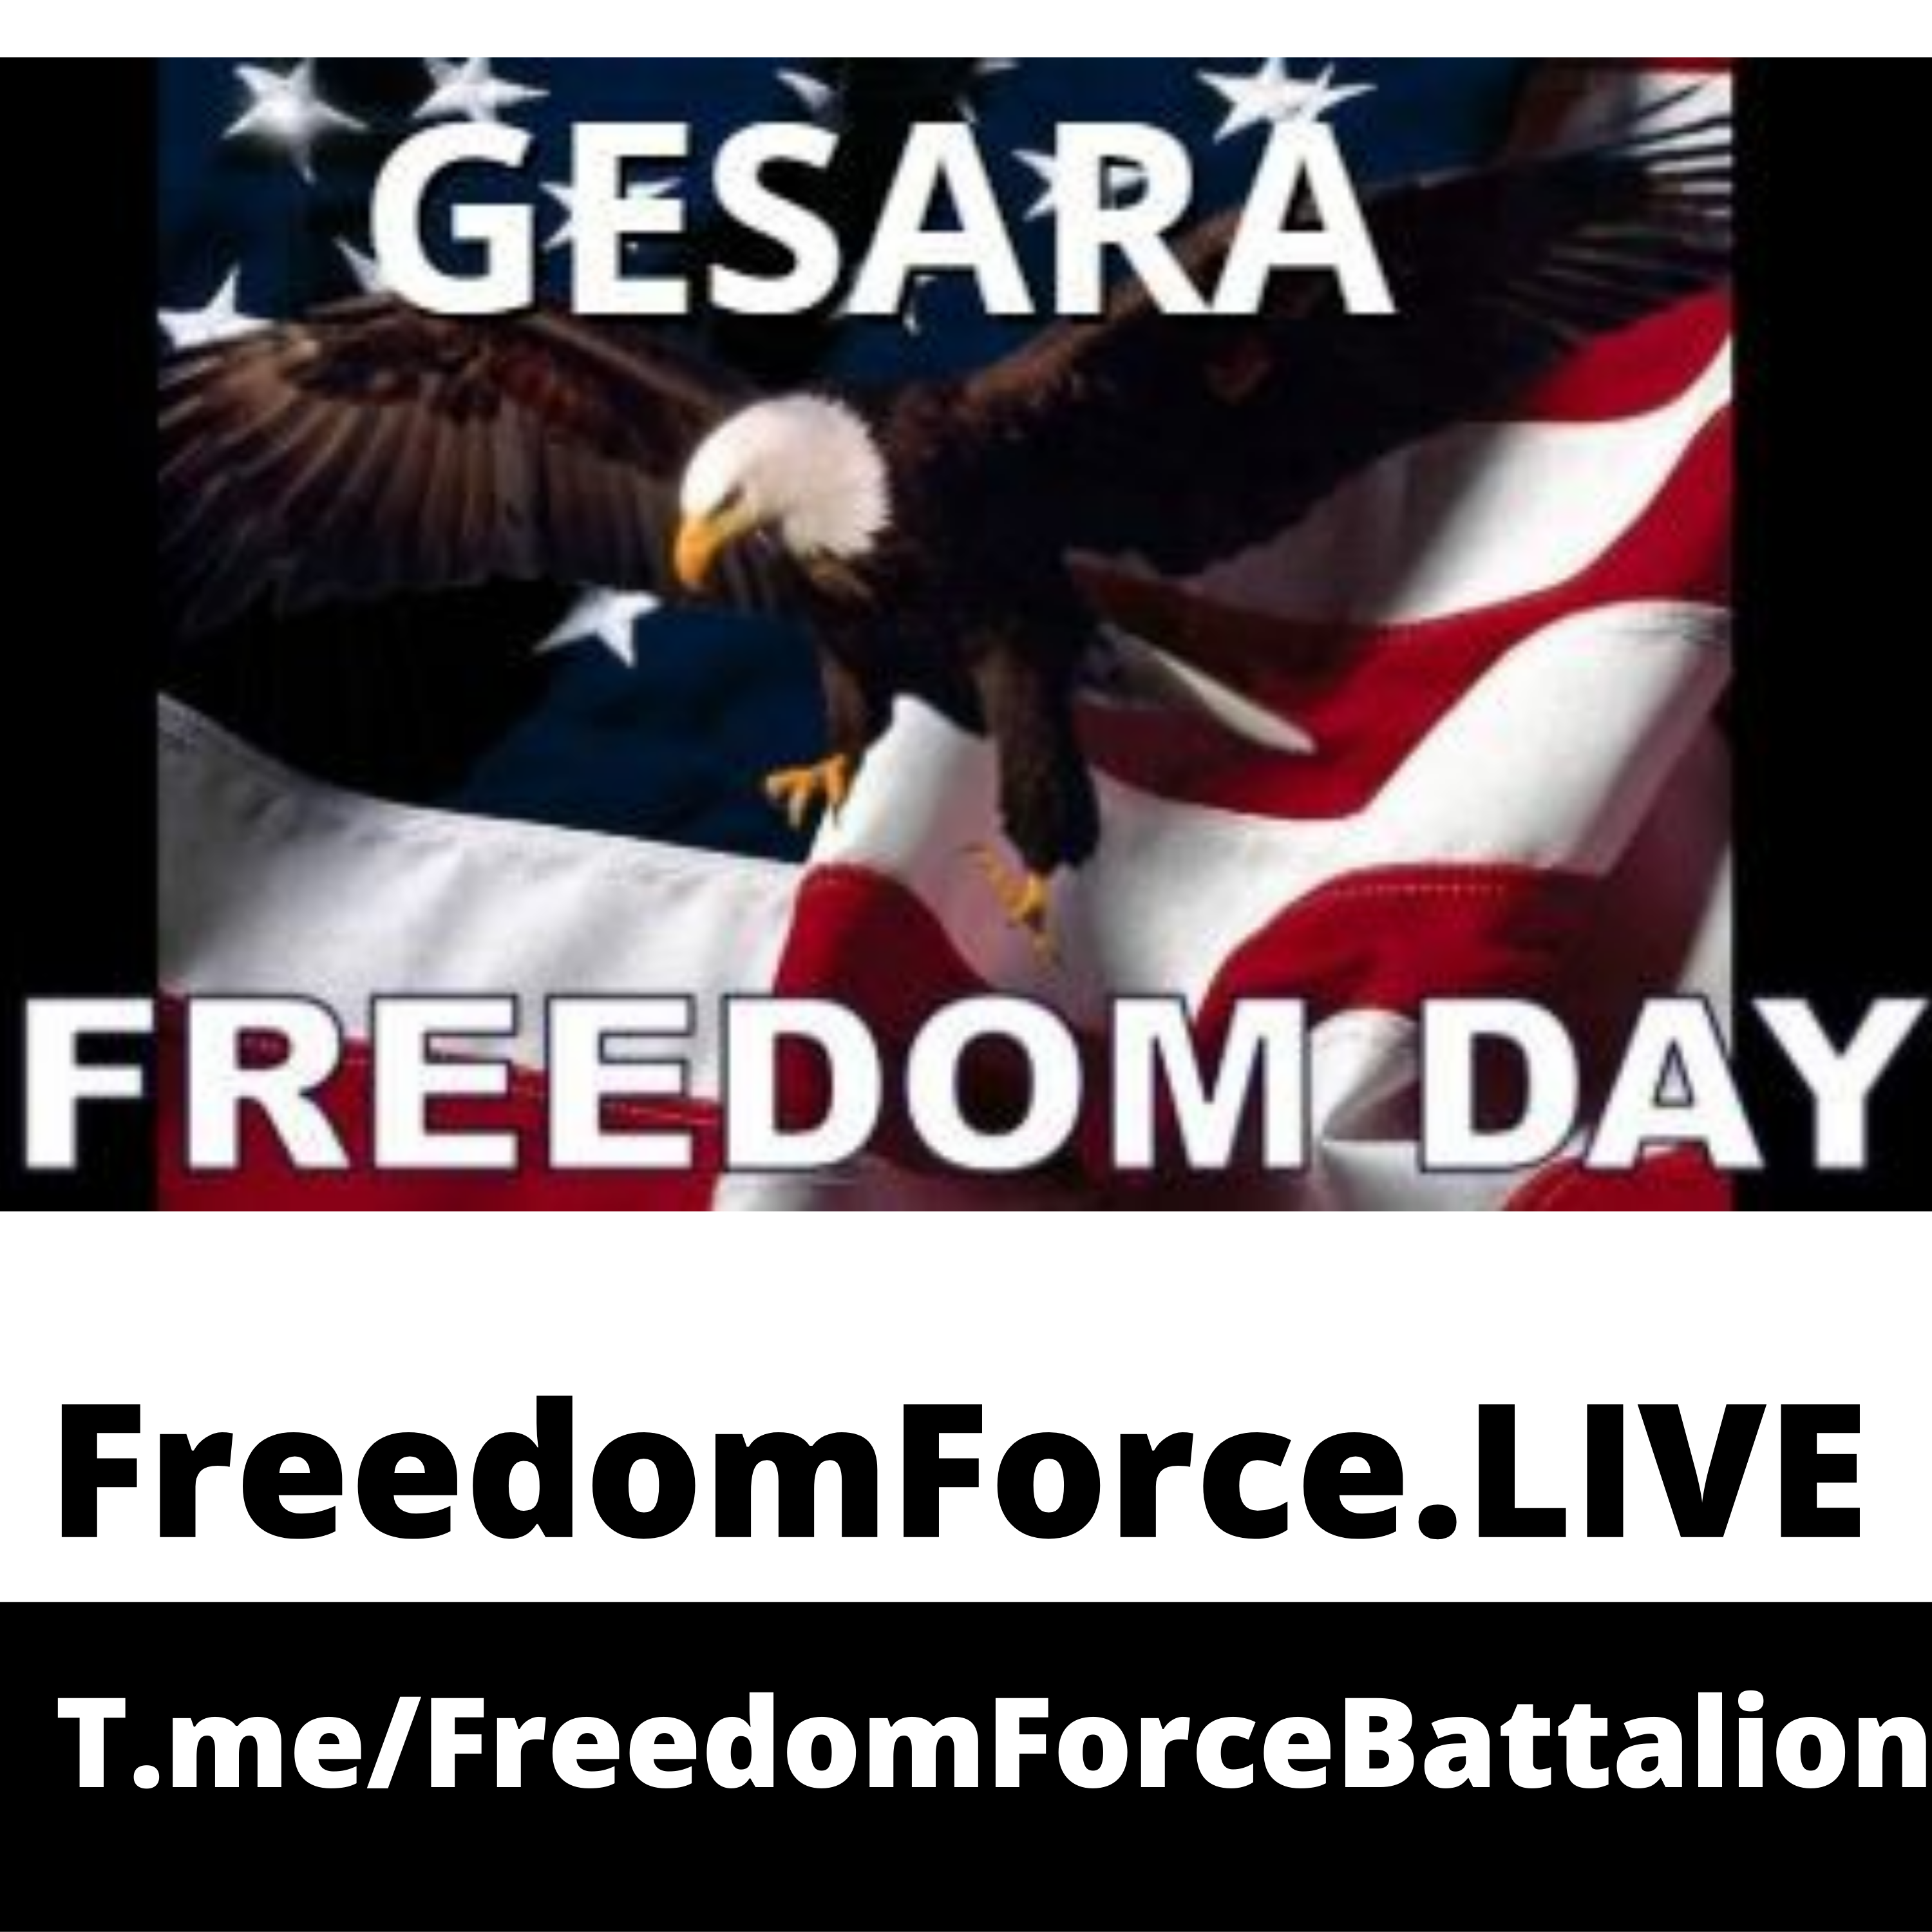 Freedom Day -GESARA 7.4.19